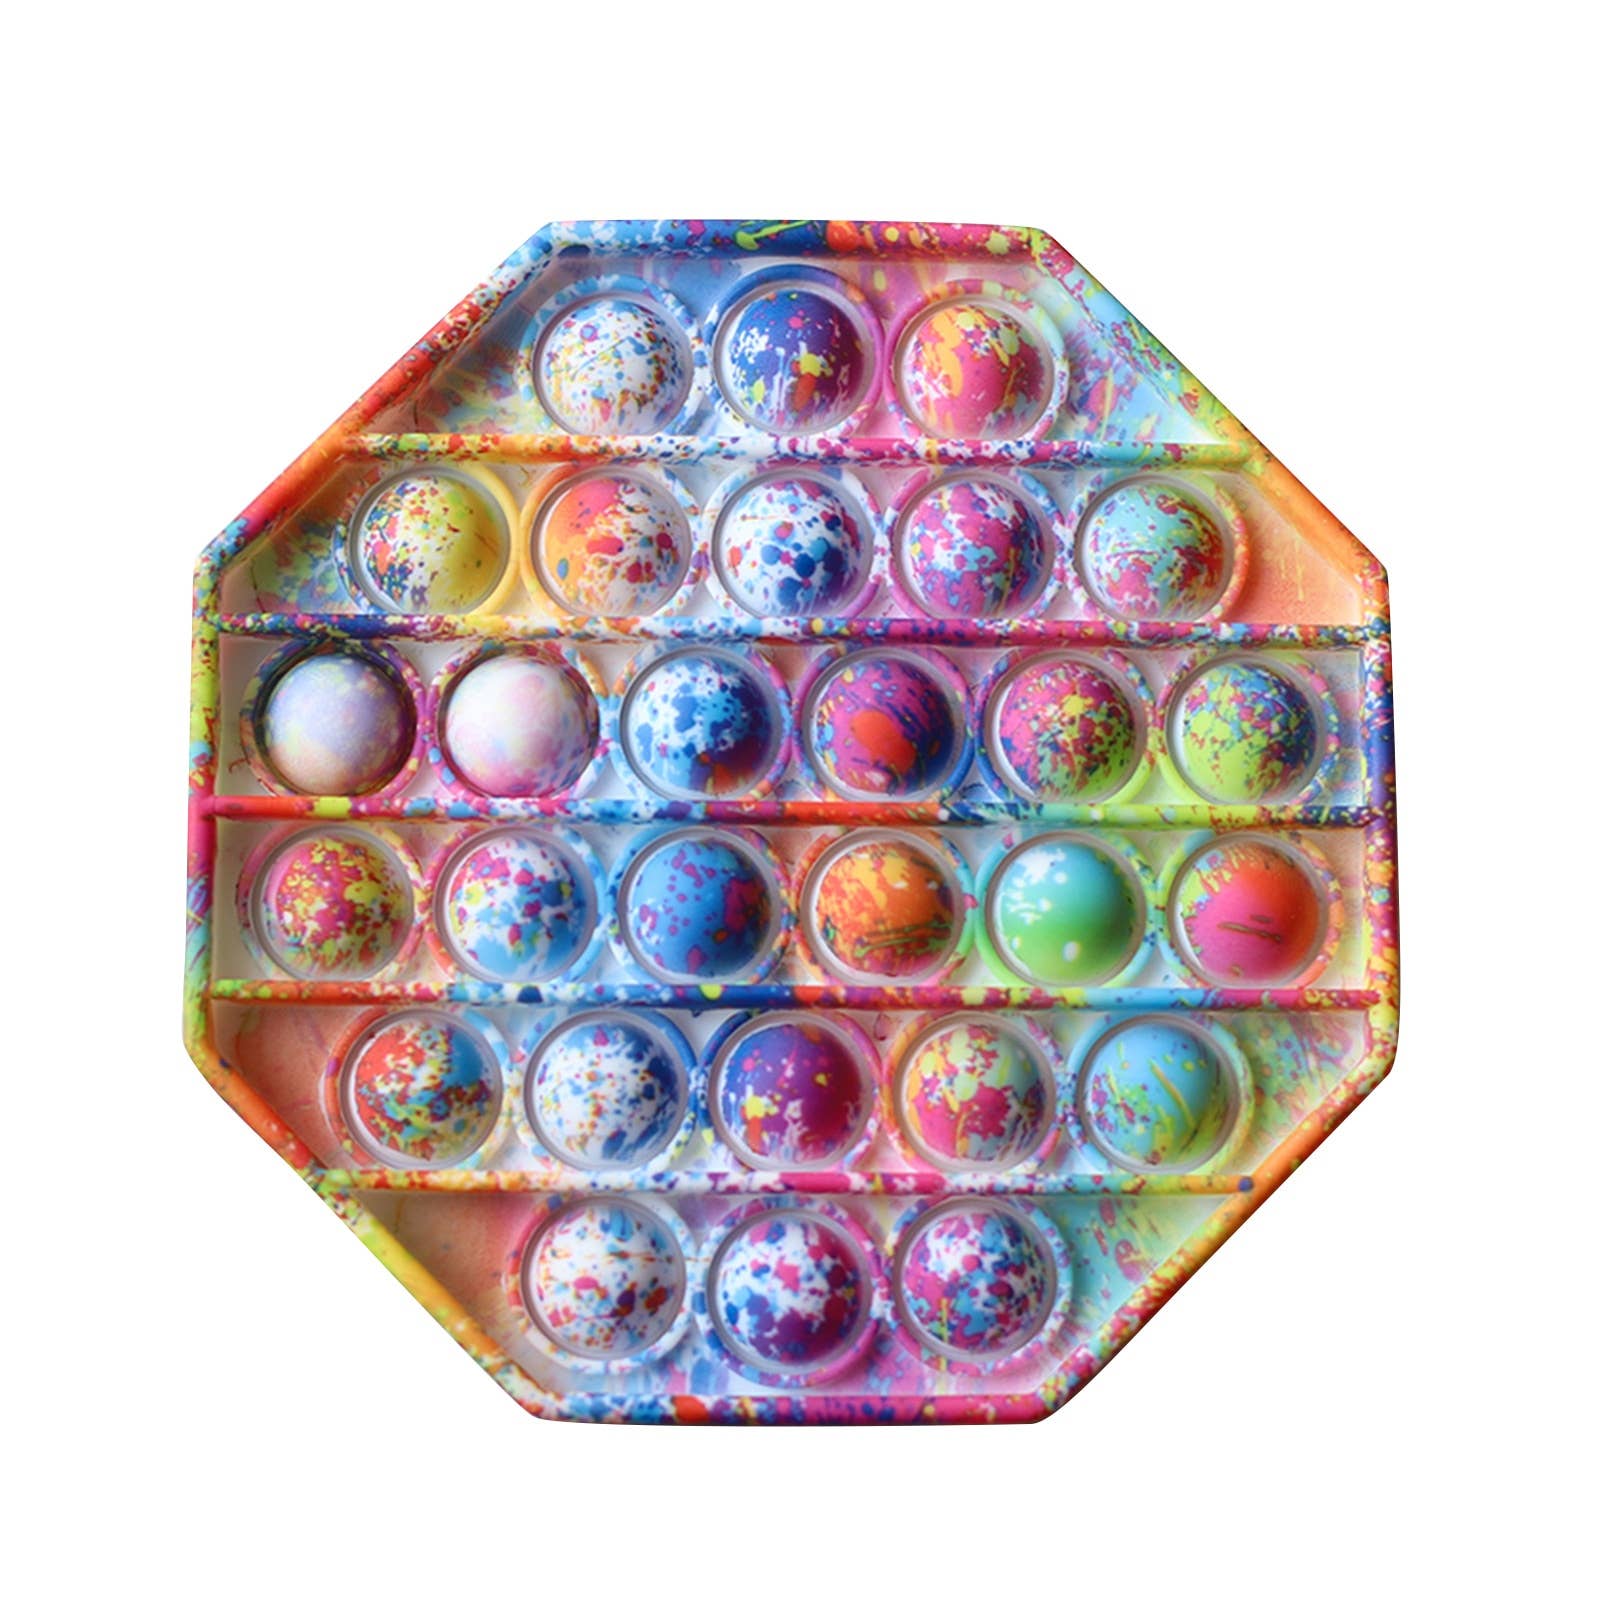 Pop Bubble Sensory Fidget Toy in Splatter Print